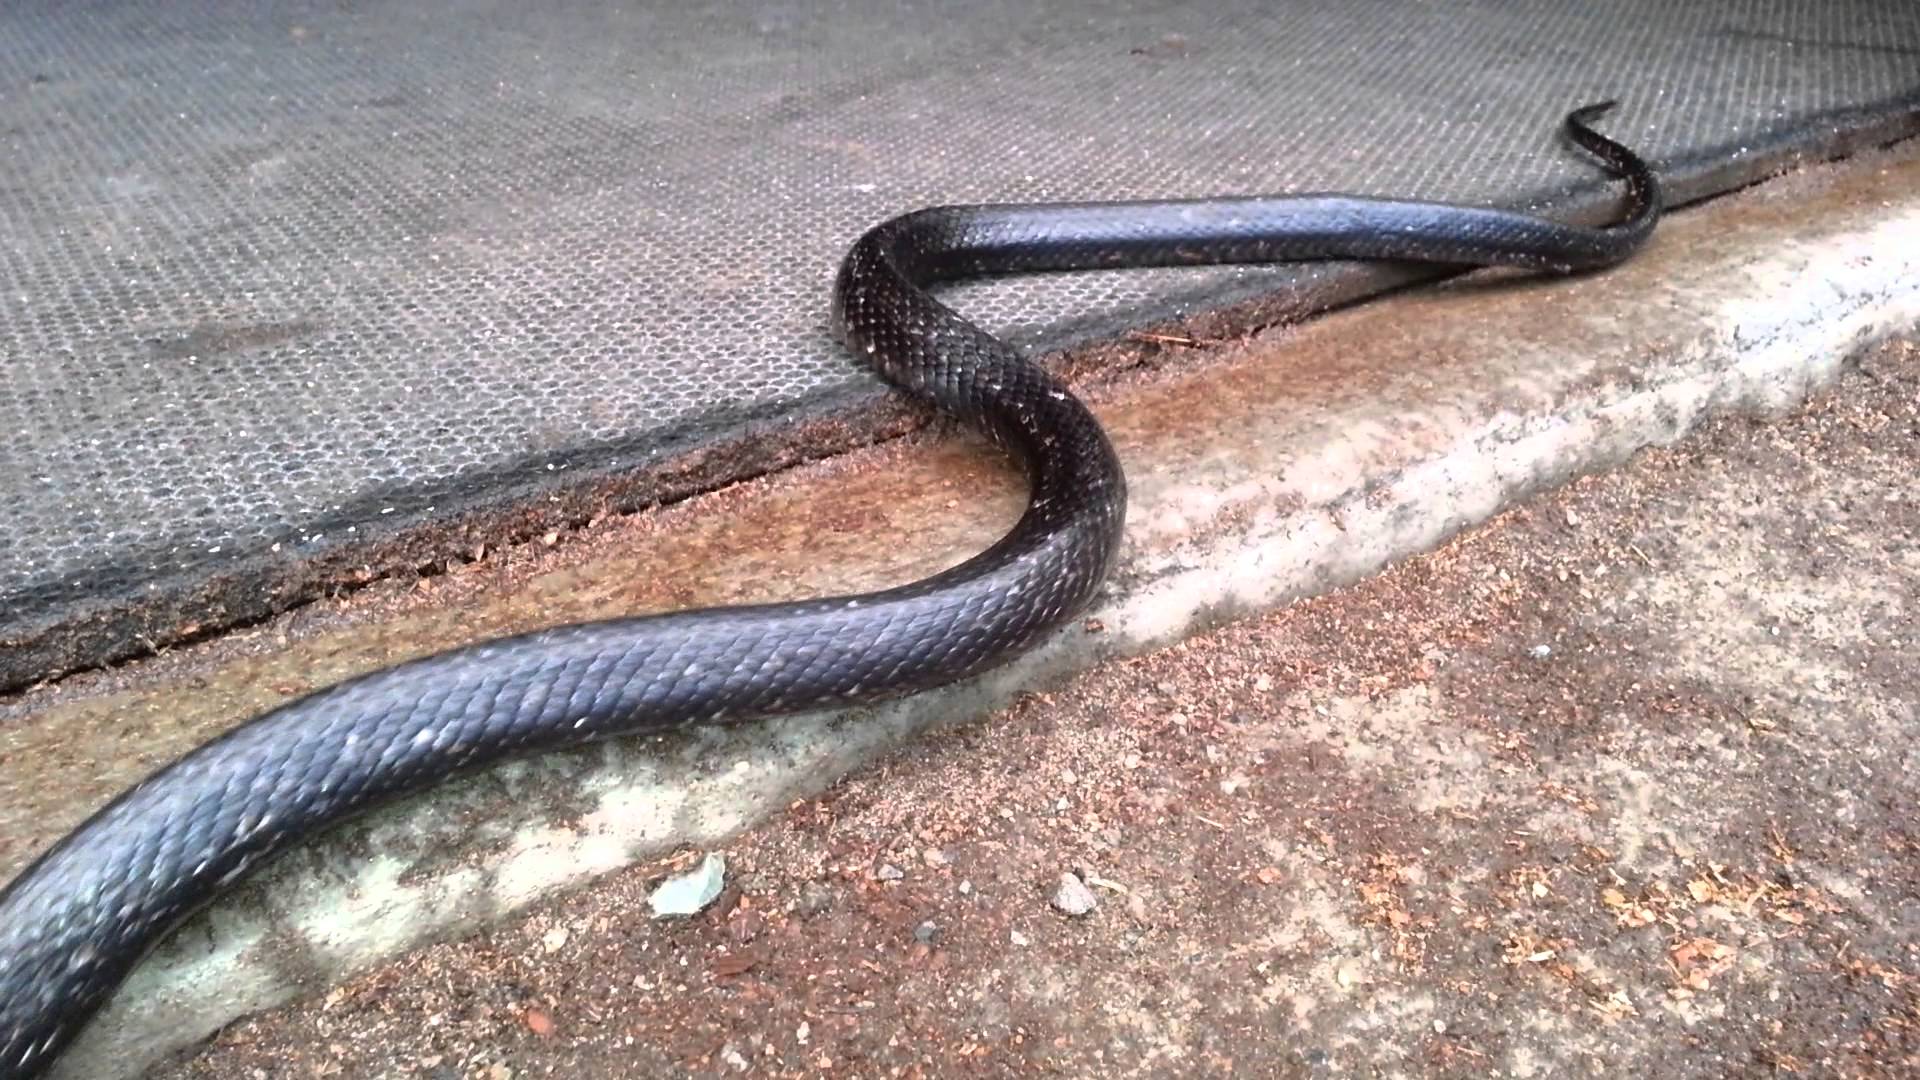 Big Black Snake In Barn - YouTube